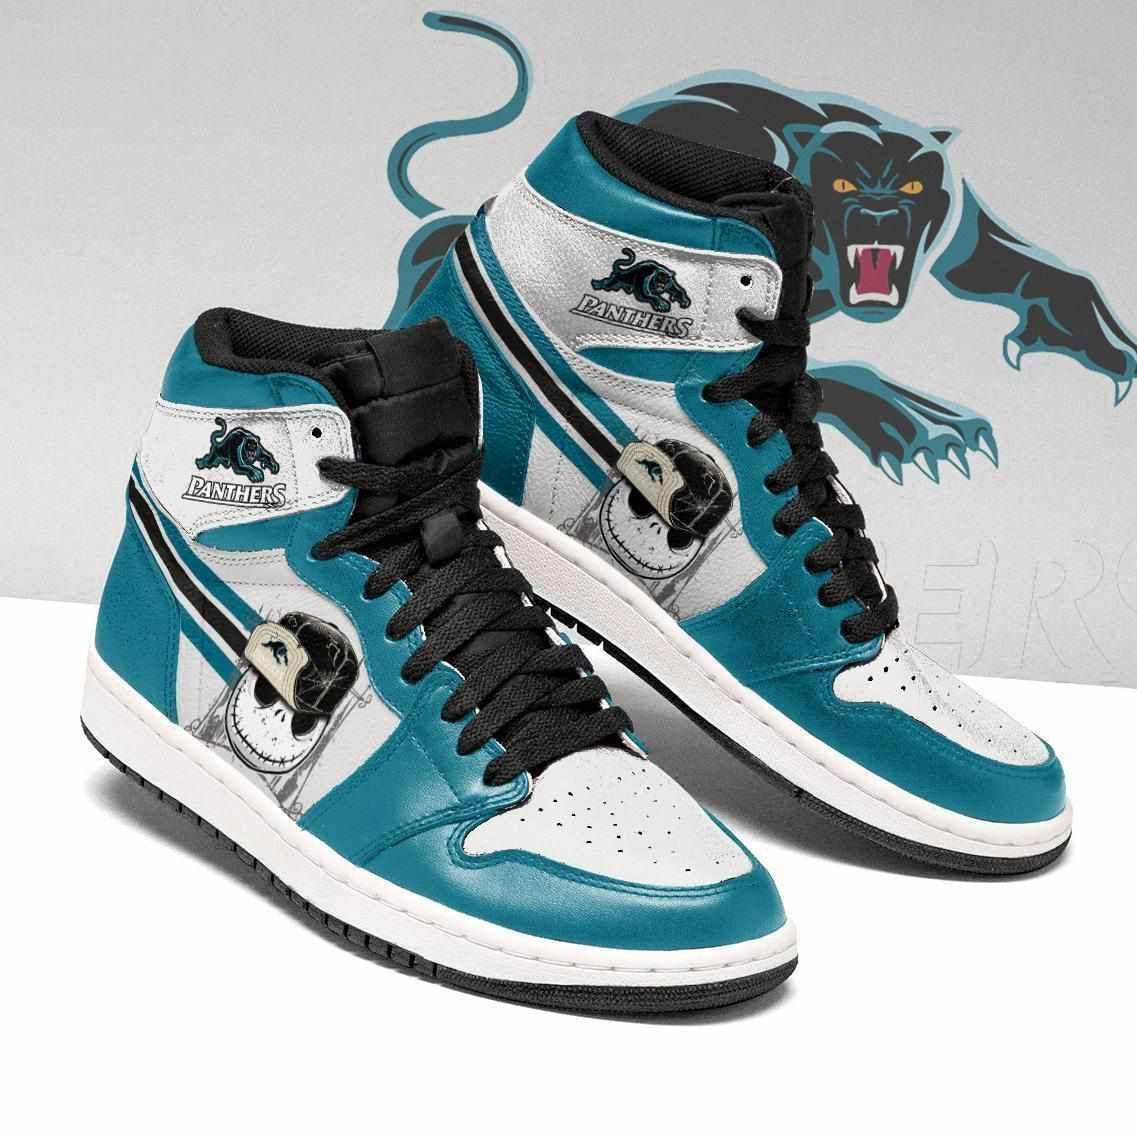 Penrith Panthers Nrl Football Jack Skellington Air Jordan Shoes Sport Sneakers